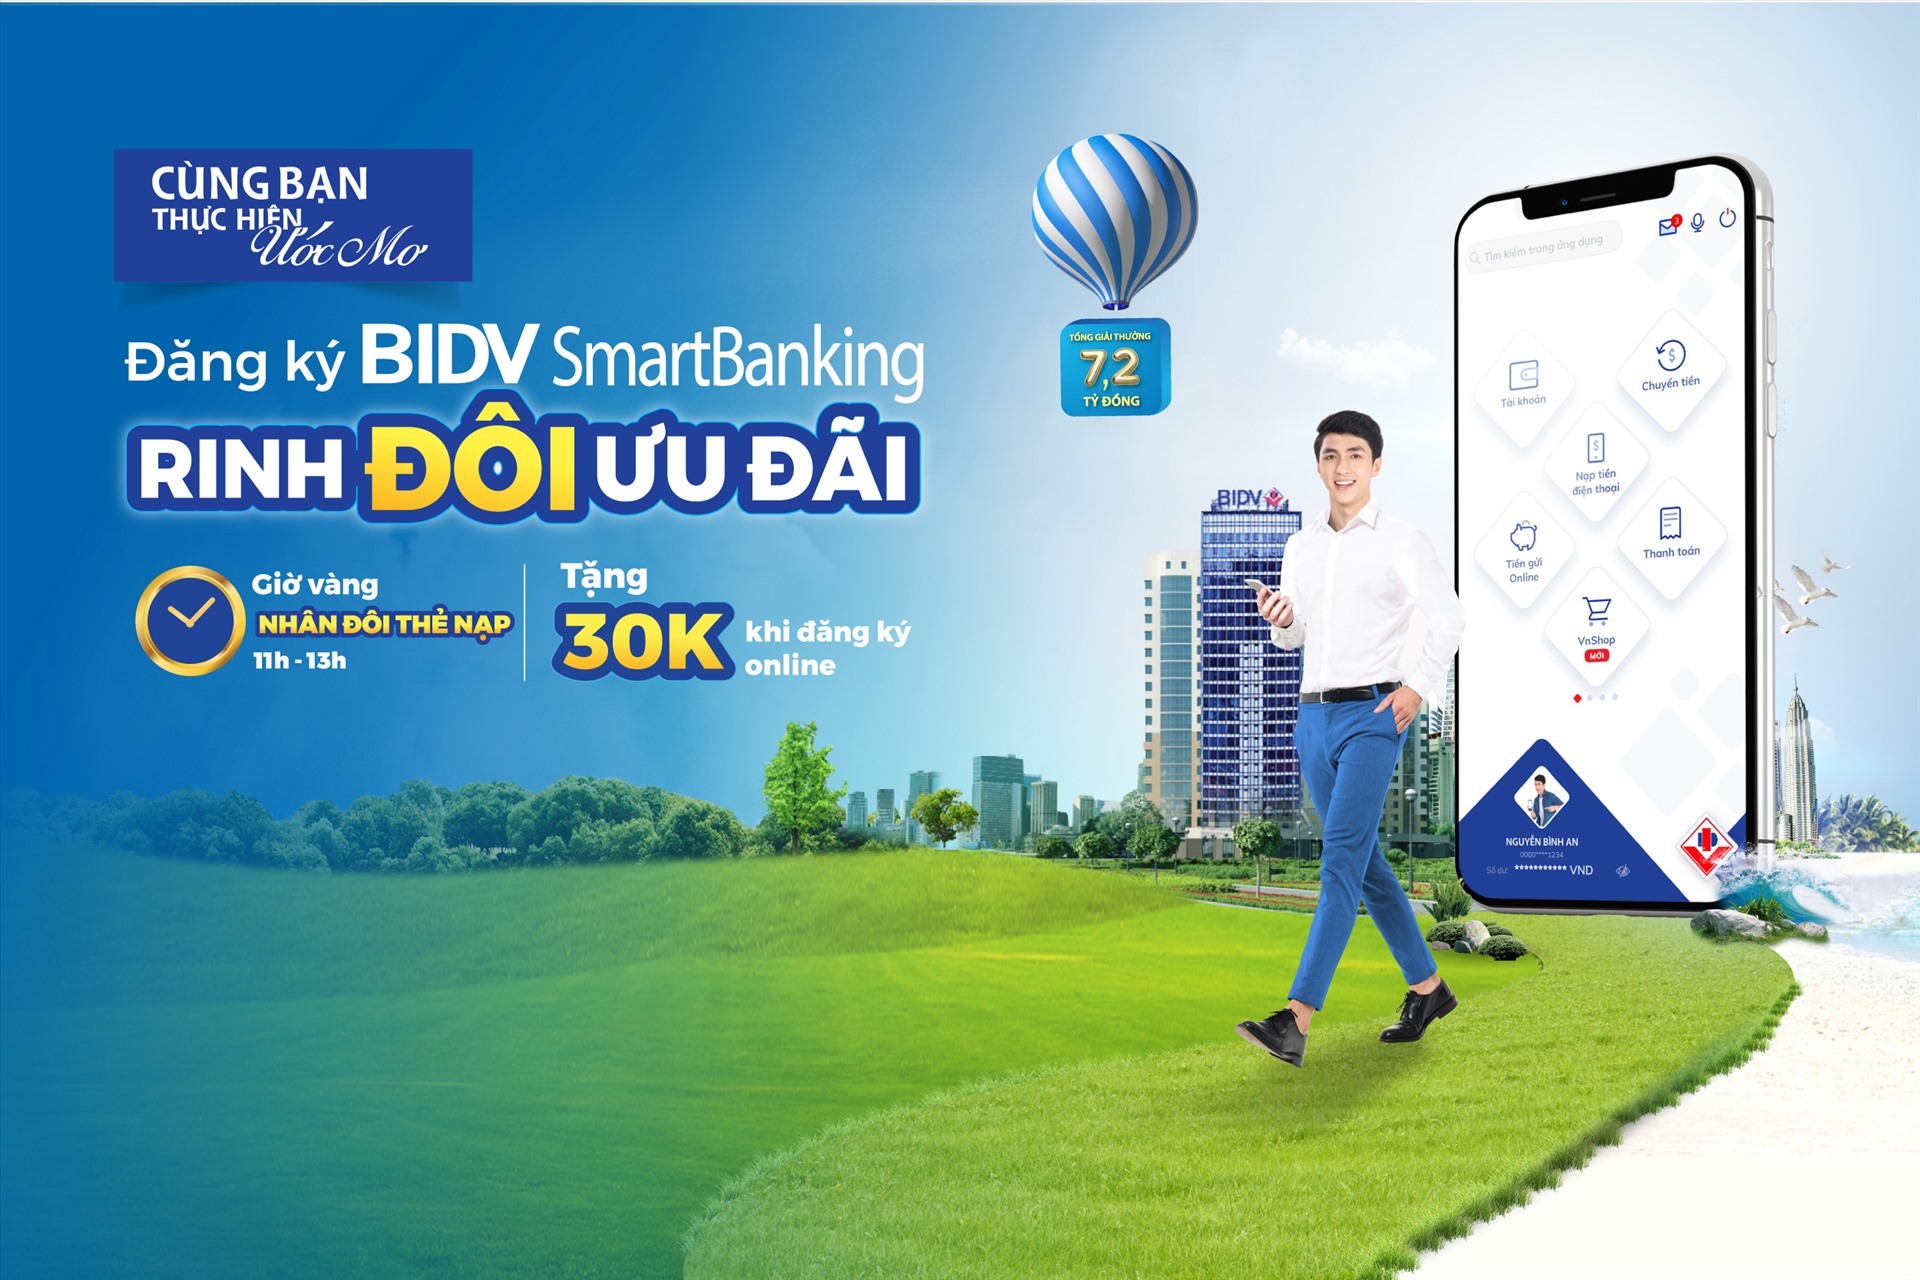 Chương trình khuyến mại dành cho khách hàng mới đăng ký BIDV SmartBanking bắt đầu từ 5.5 đến hết ngày 1.10.2020. Ảnh BID